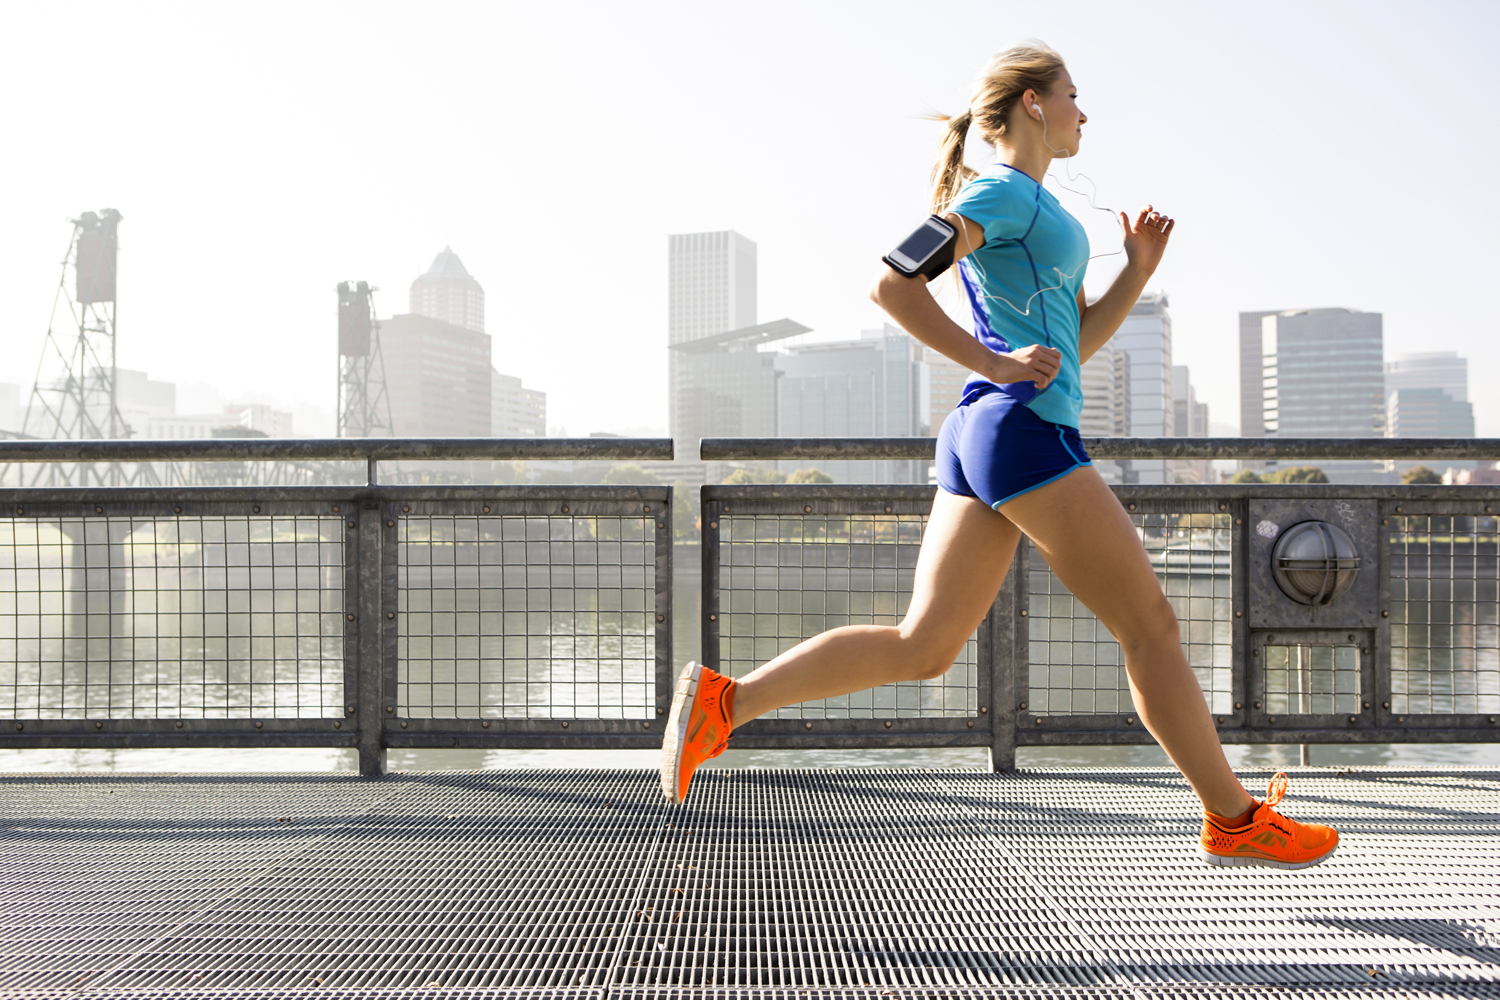 Running improves memory